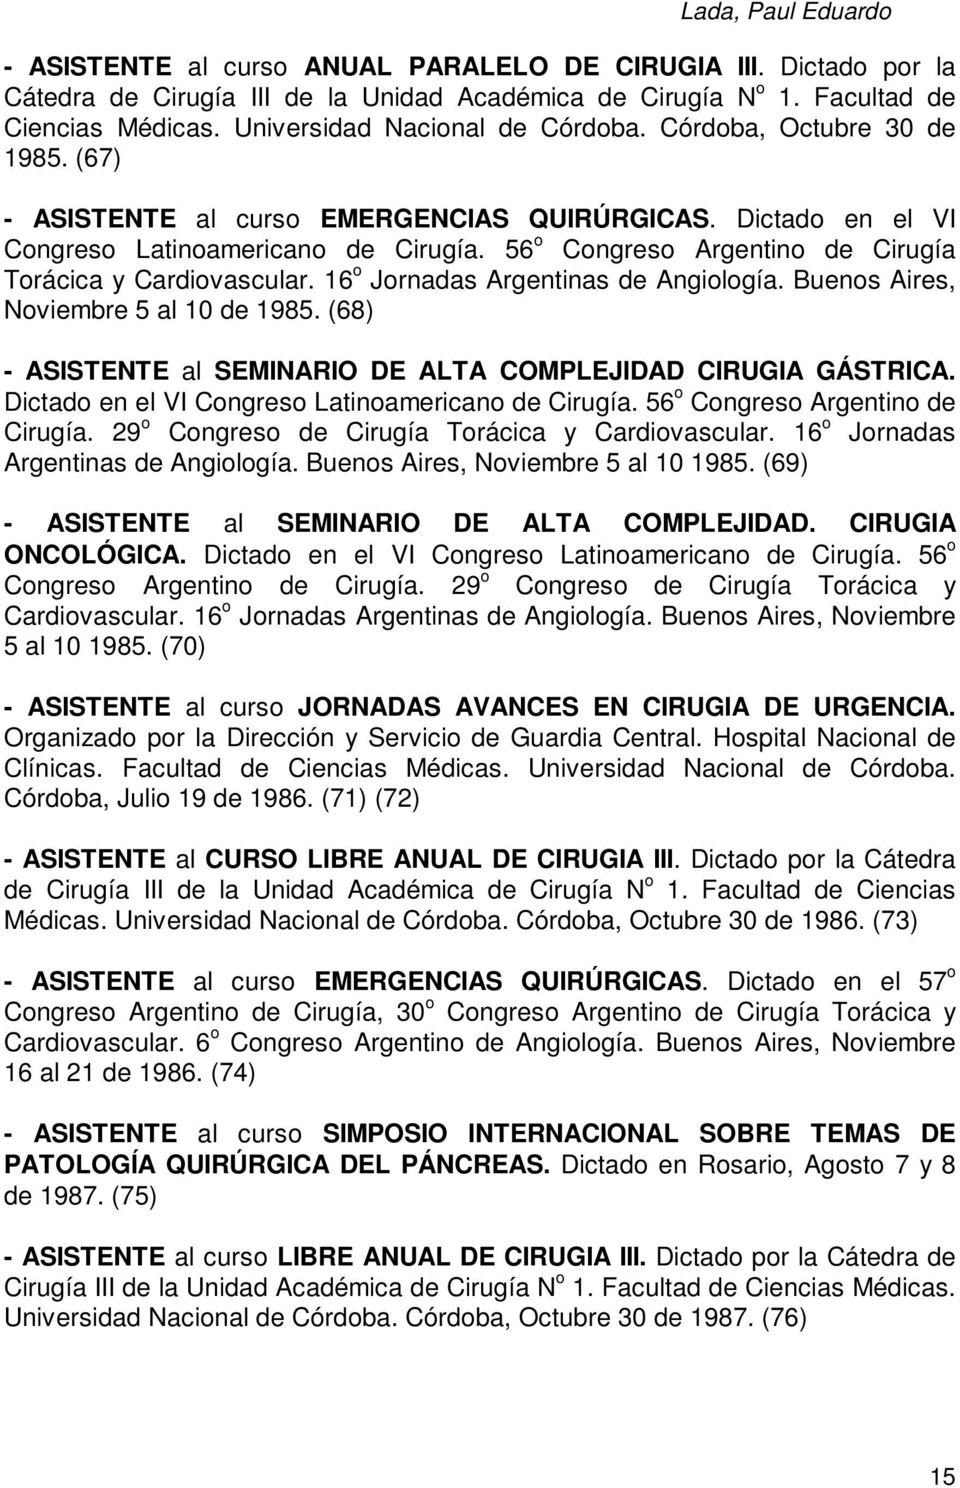 16 o Jornadas Argentinas de Angiología. Buenos Aires, Noviembre 5 al 10 de 1985. (68) - ASISTENTE al SEMINARIO DE ALTA COMPLEJIDAD CIRUGIA GÁSTRICA.